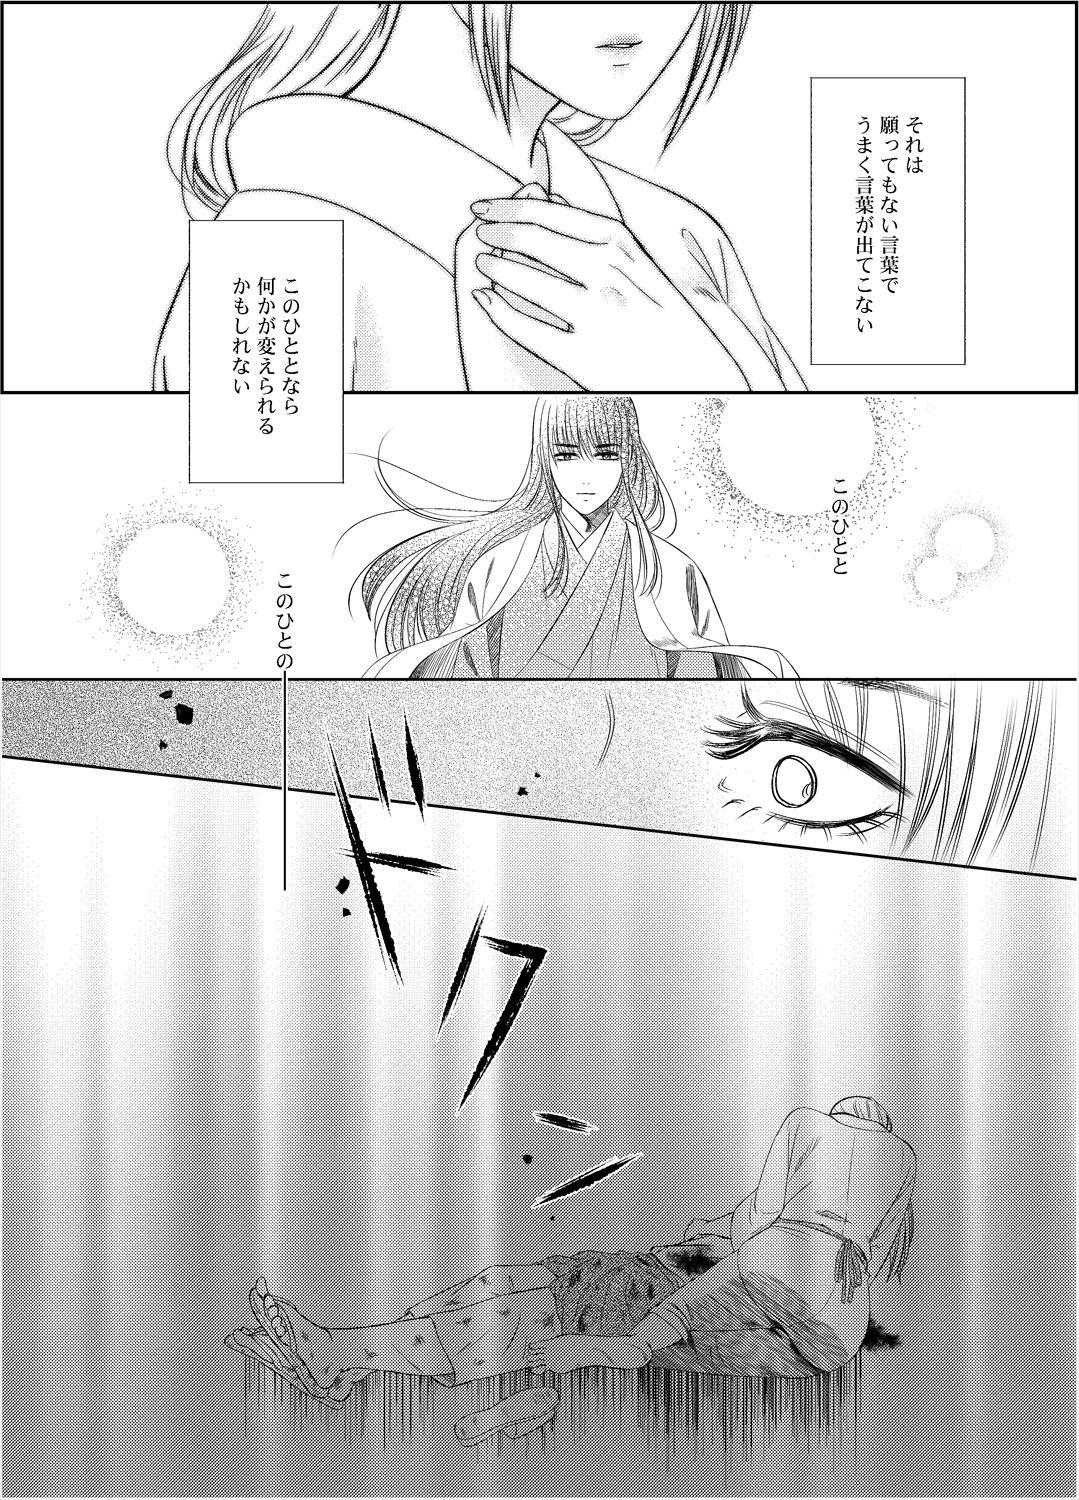 Farting Yonoya - Gintama Beard - Page 7